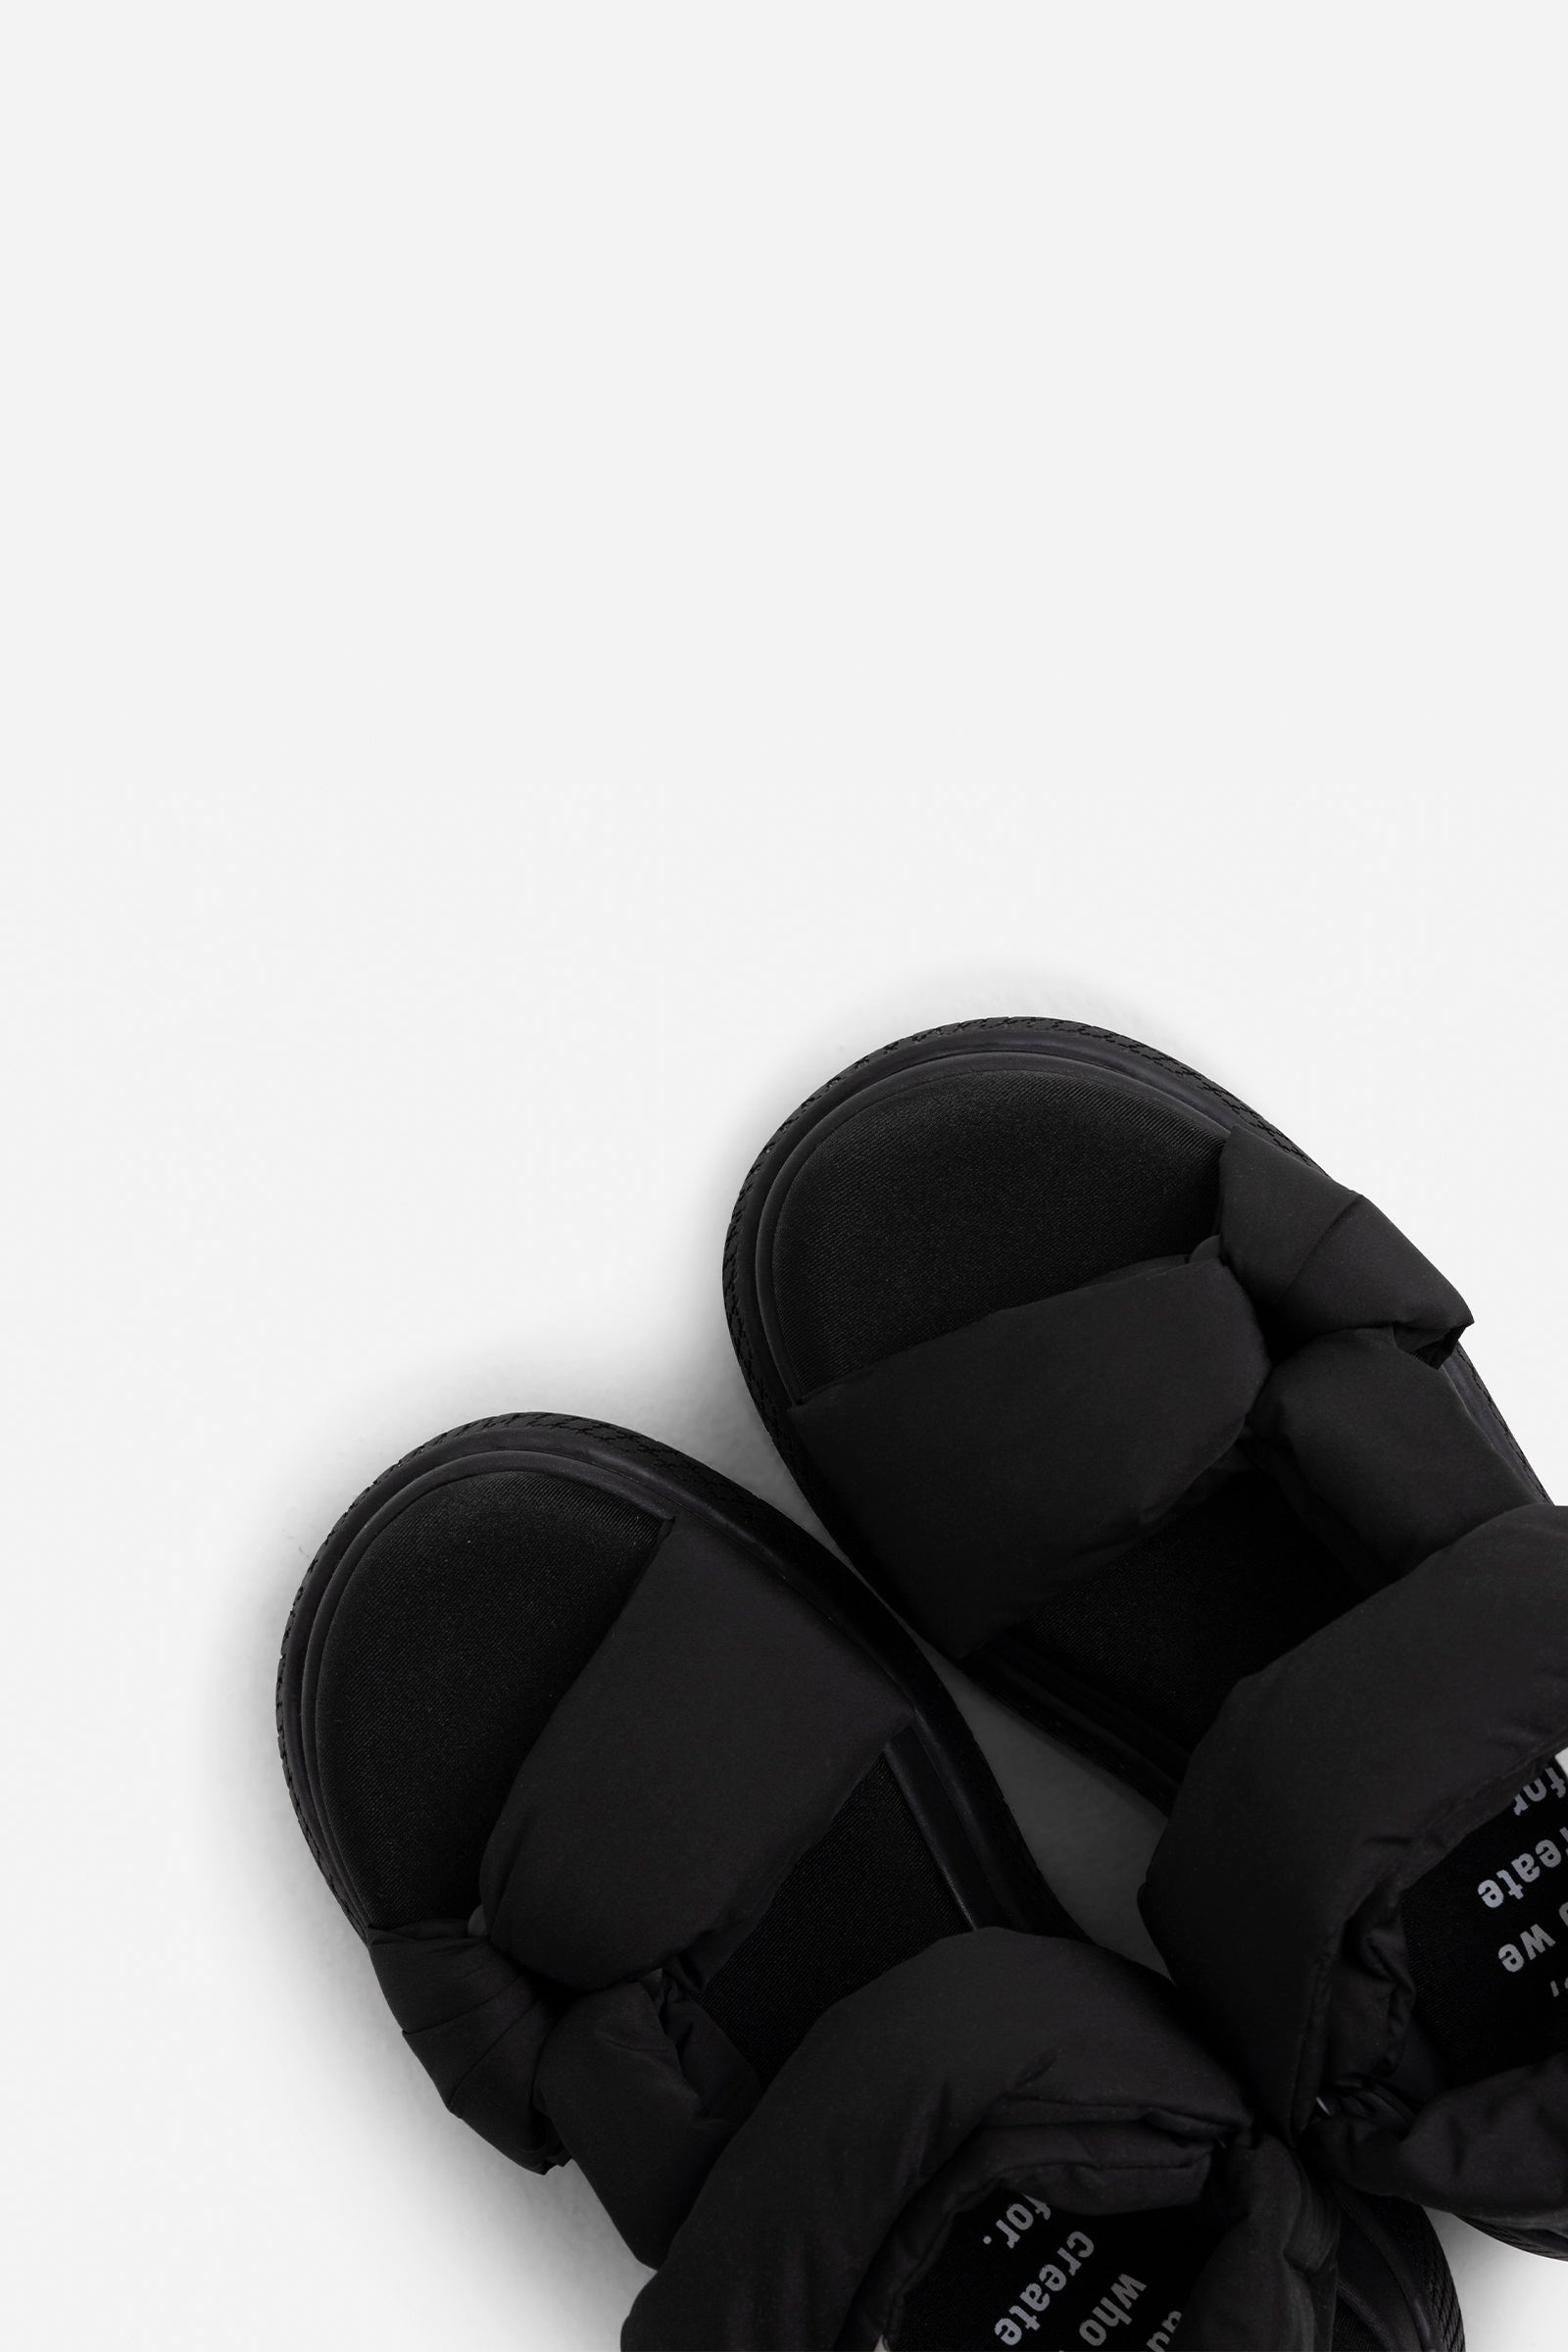 Cute Black Shoes - High Heel Sandals - Ankle Strap Heels - Lulus